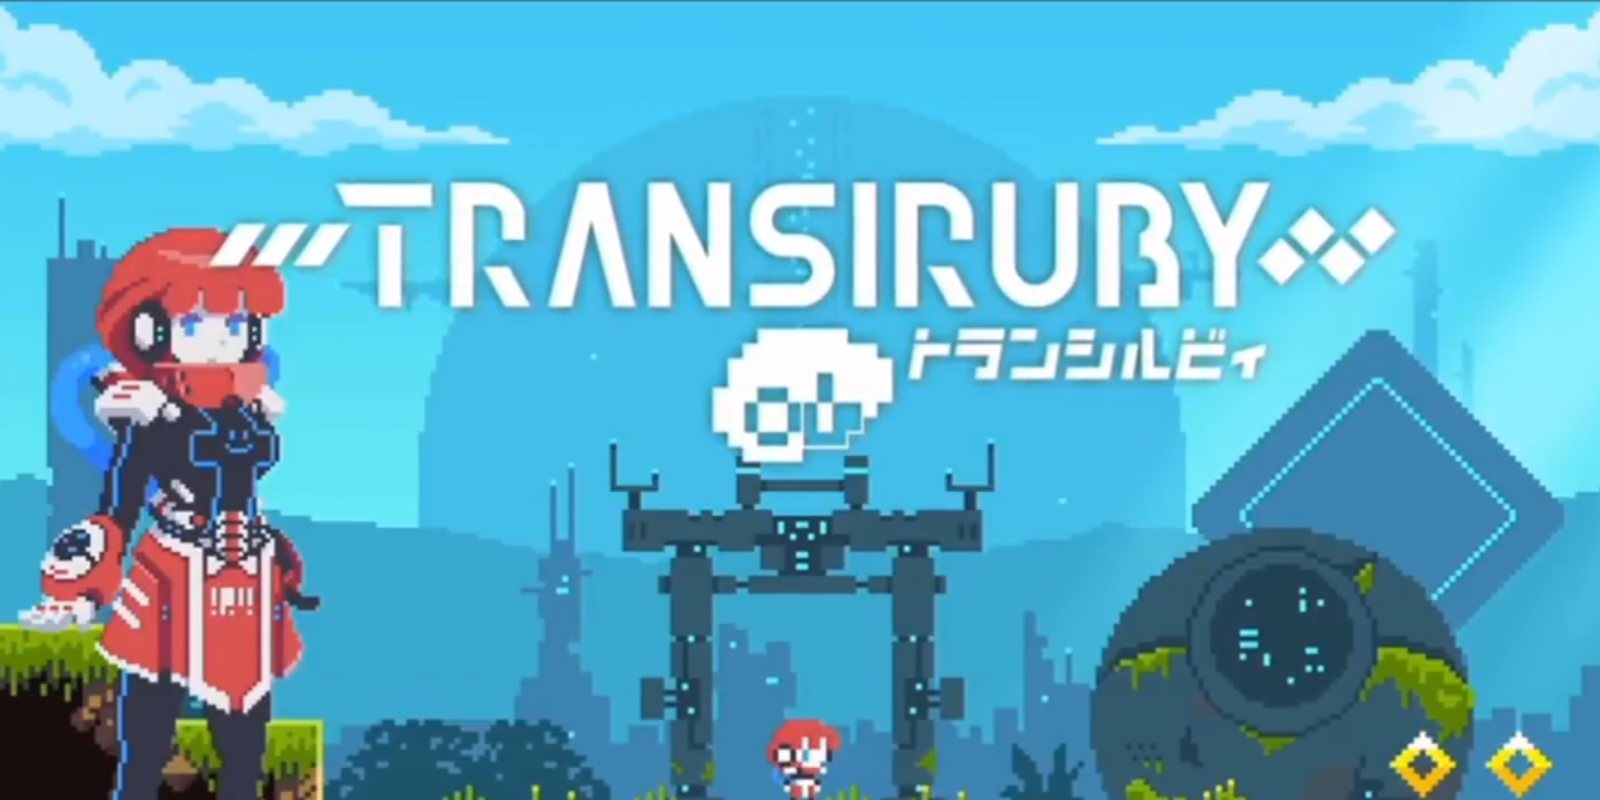 'Transiruby' es el próximo juego del creador de 'Kamiko' para 2019